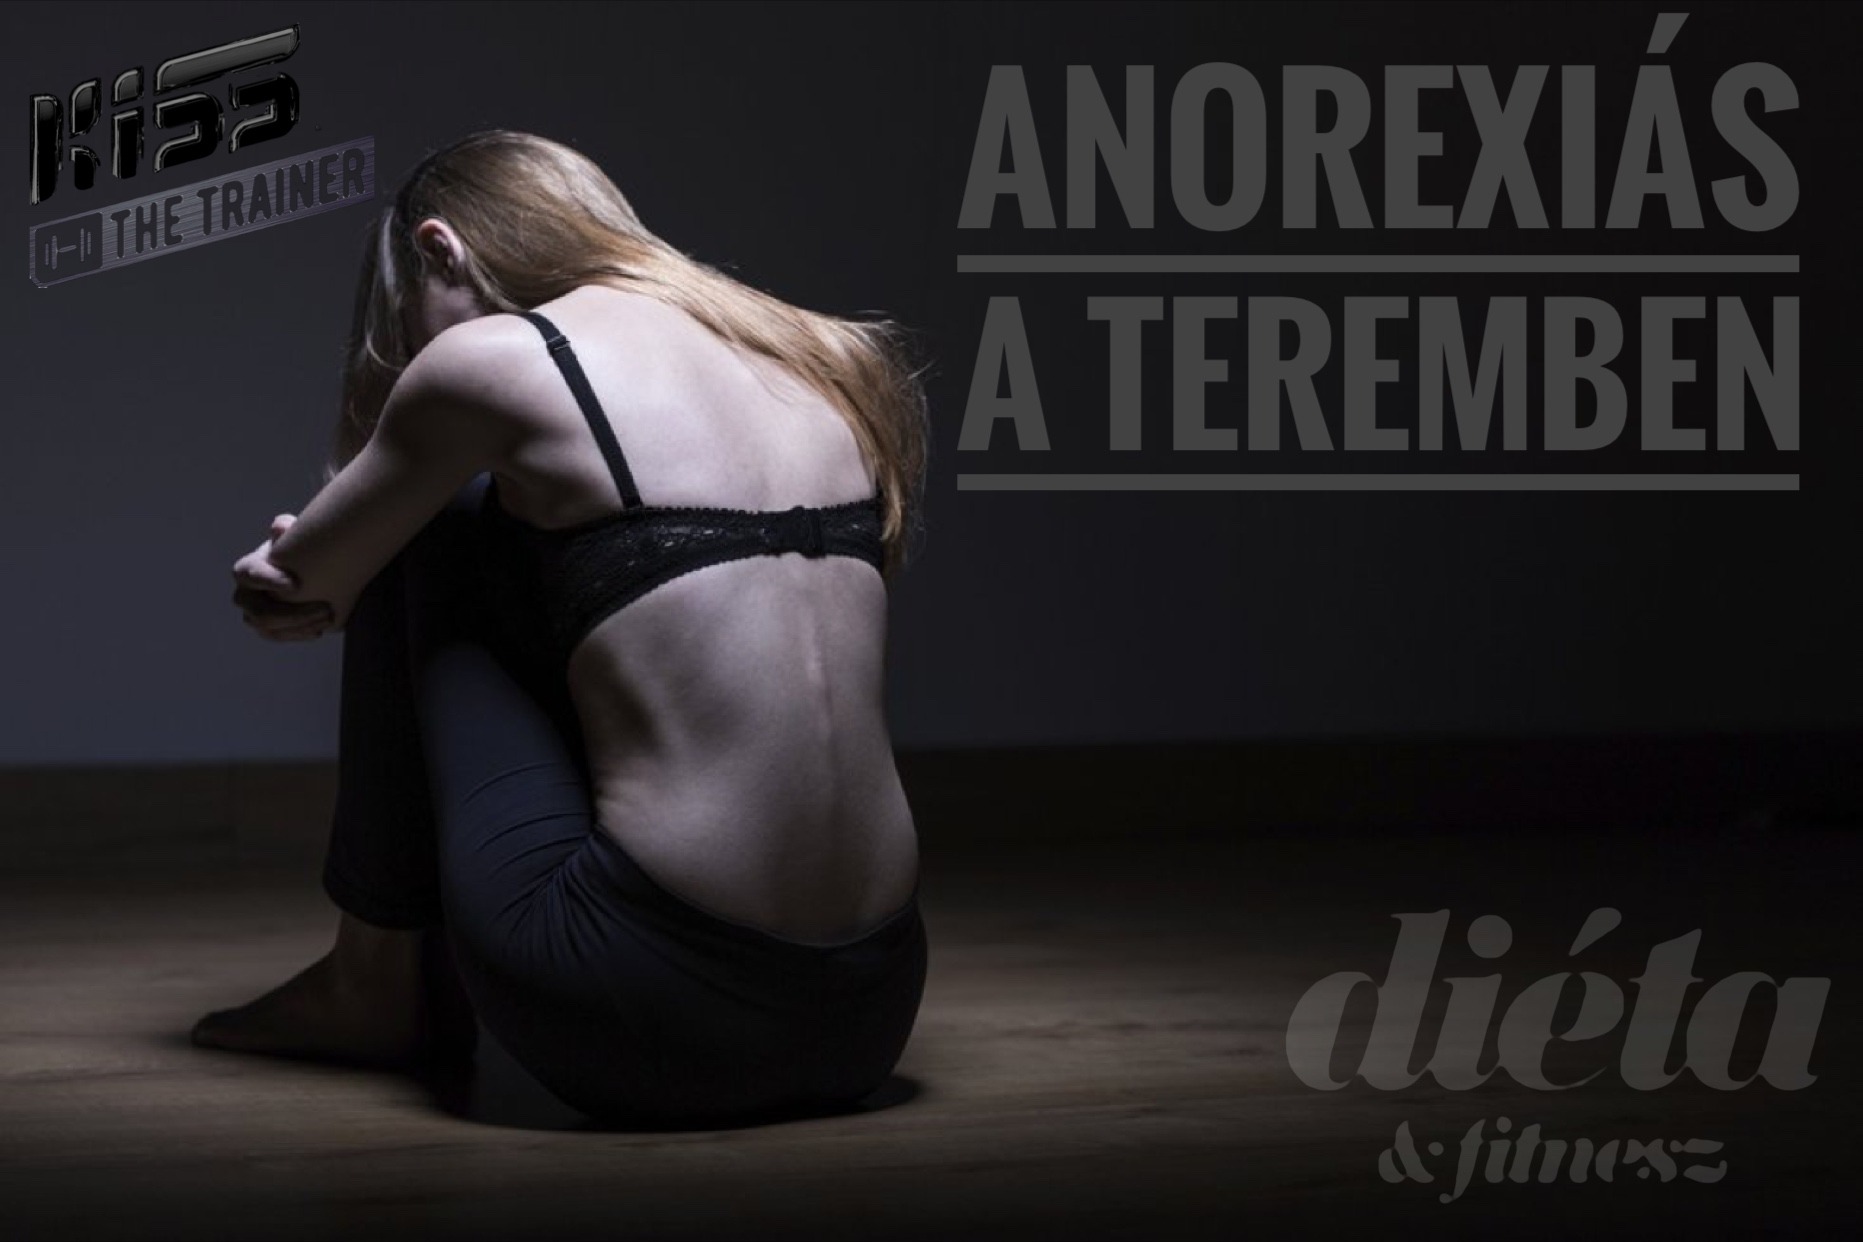 Fogyás tippek anorexiás - 5 kg fogyási tippek? (anorexia, túlevés, bulimia után)